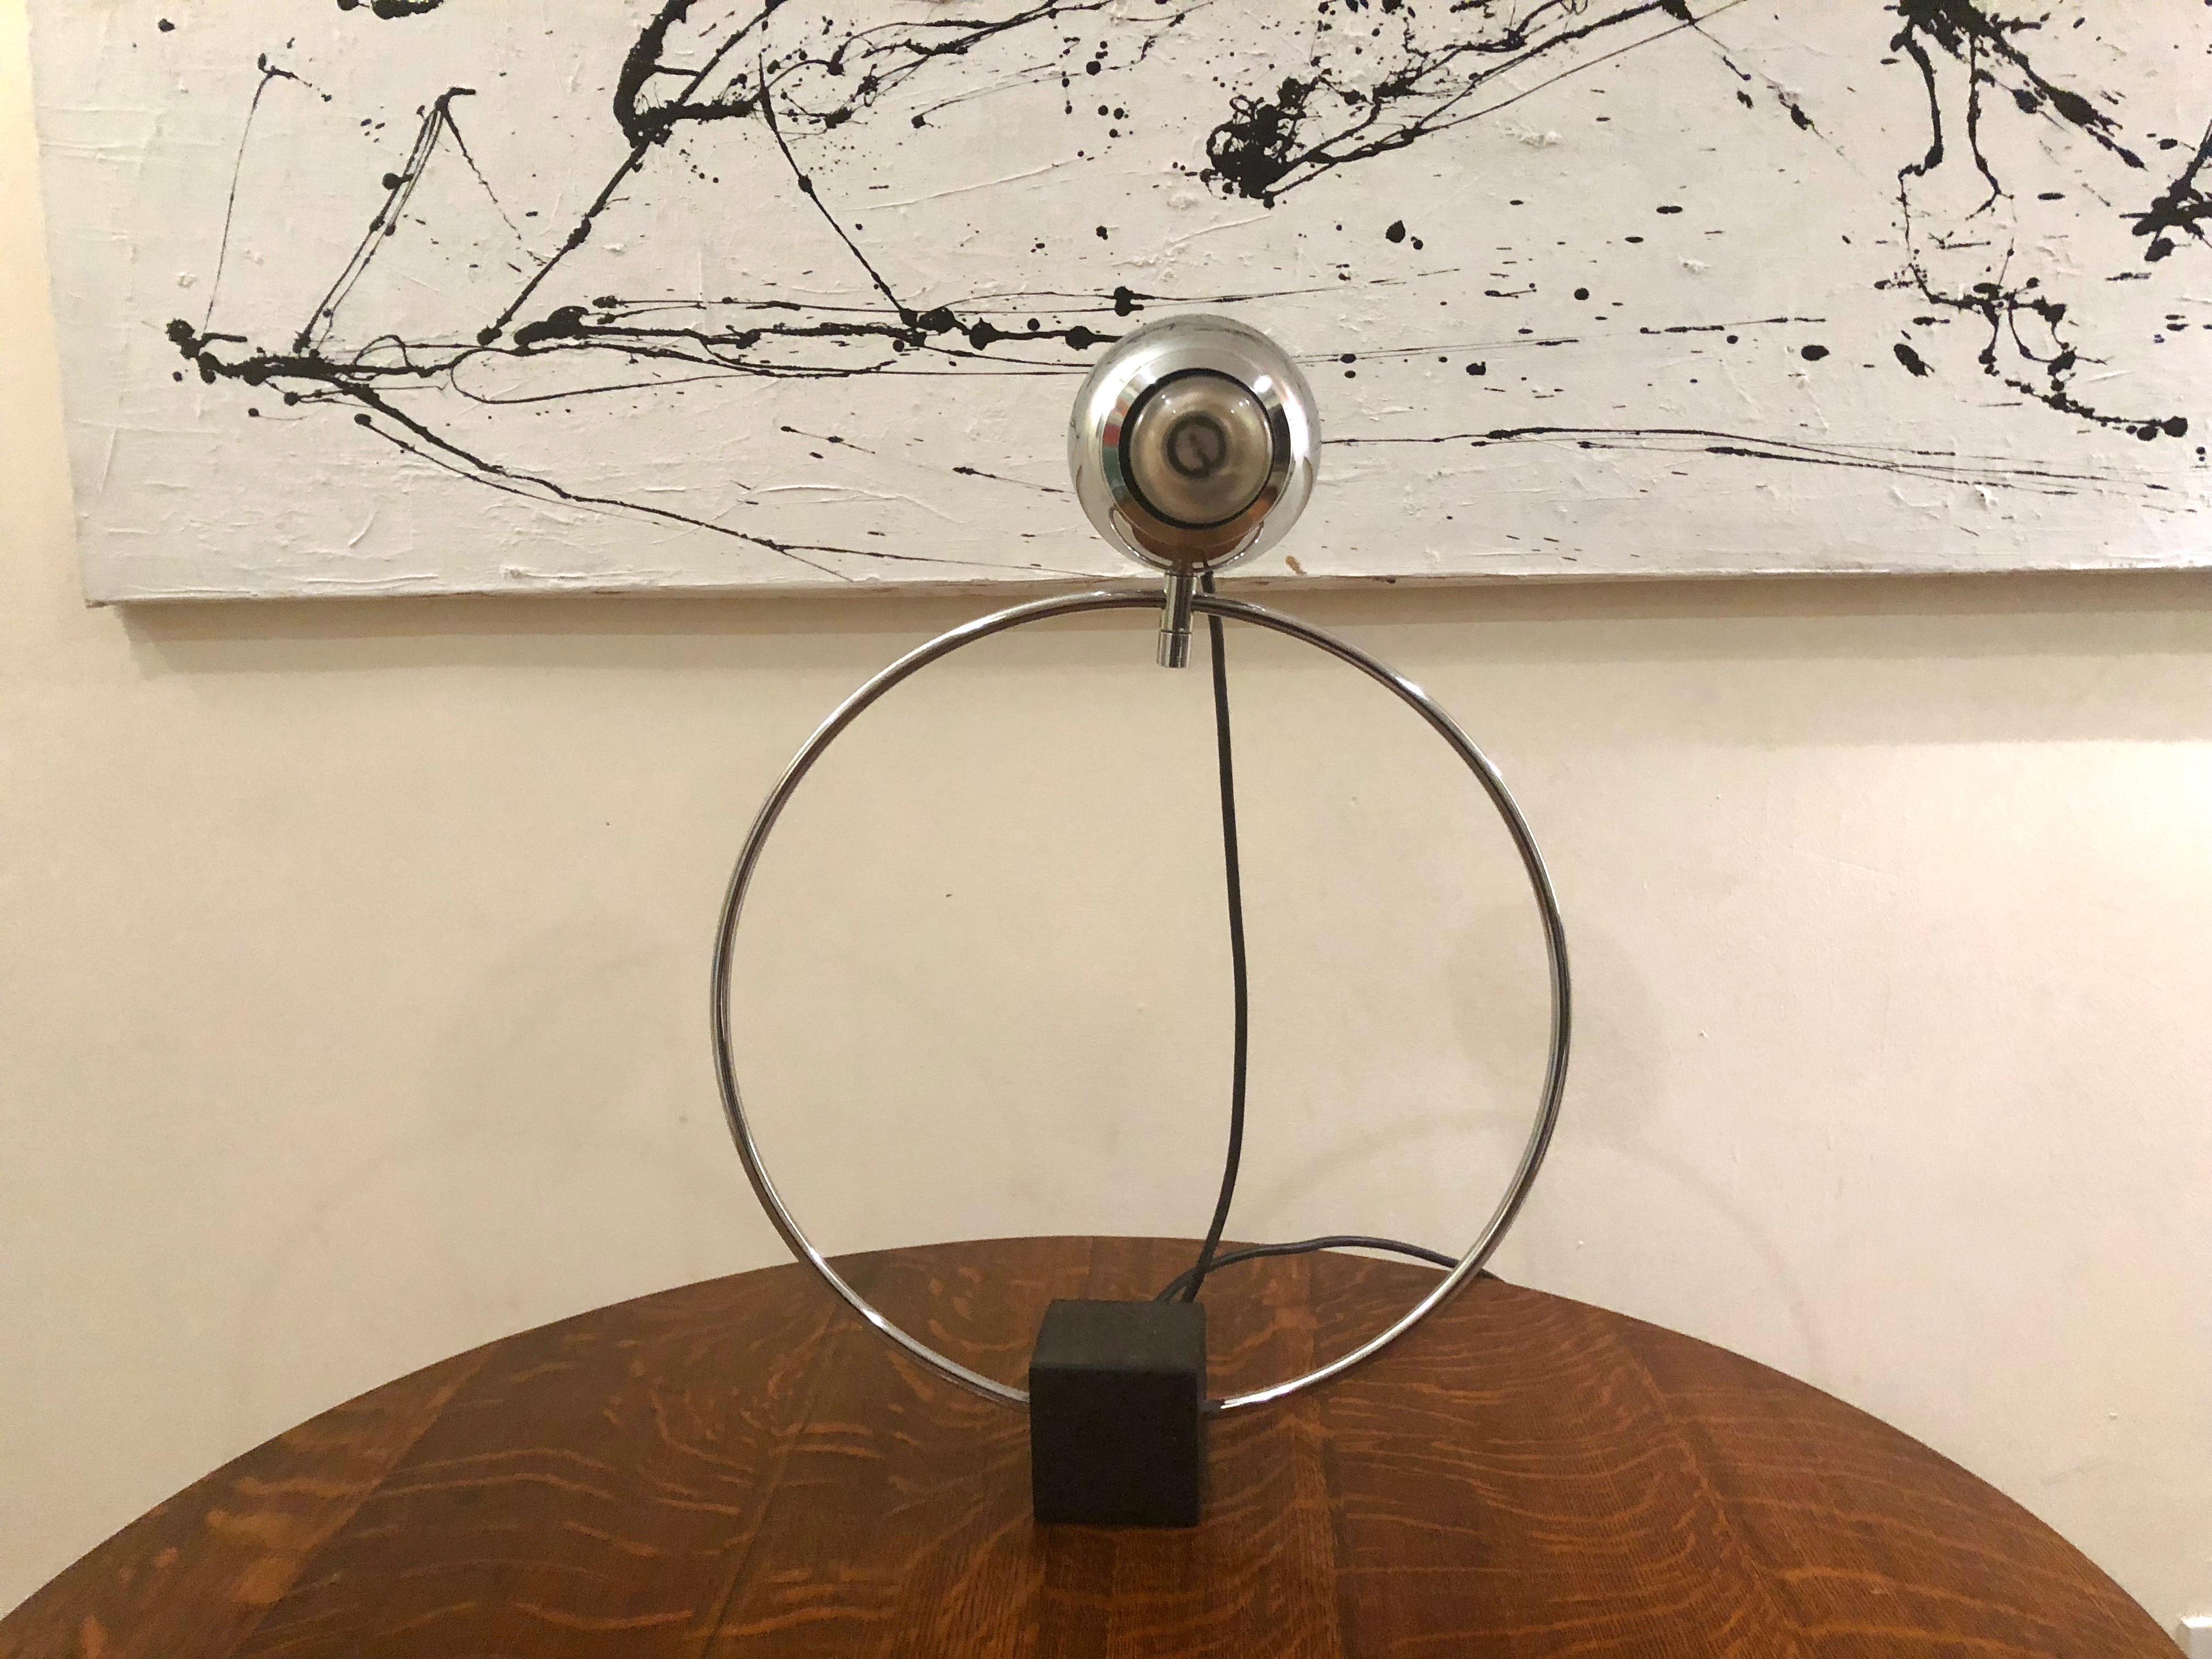 La lampe de table / de bureau est composée d'une base cubique en acier noirci qui supporte un cadre circulaire en métal chromé poli et un diffuseur de forme atomique également en métal chromé poli. Le diffuseur est une tête sphérique articulée à 360